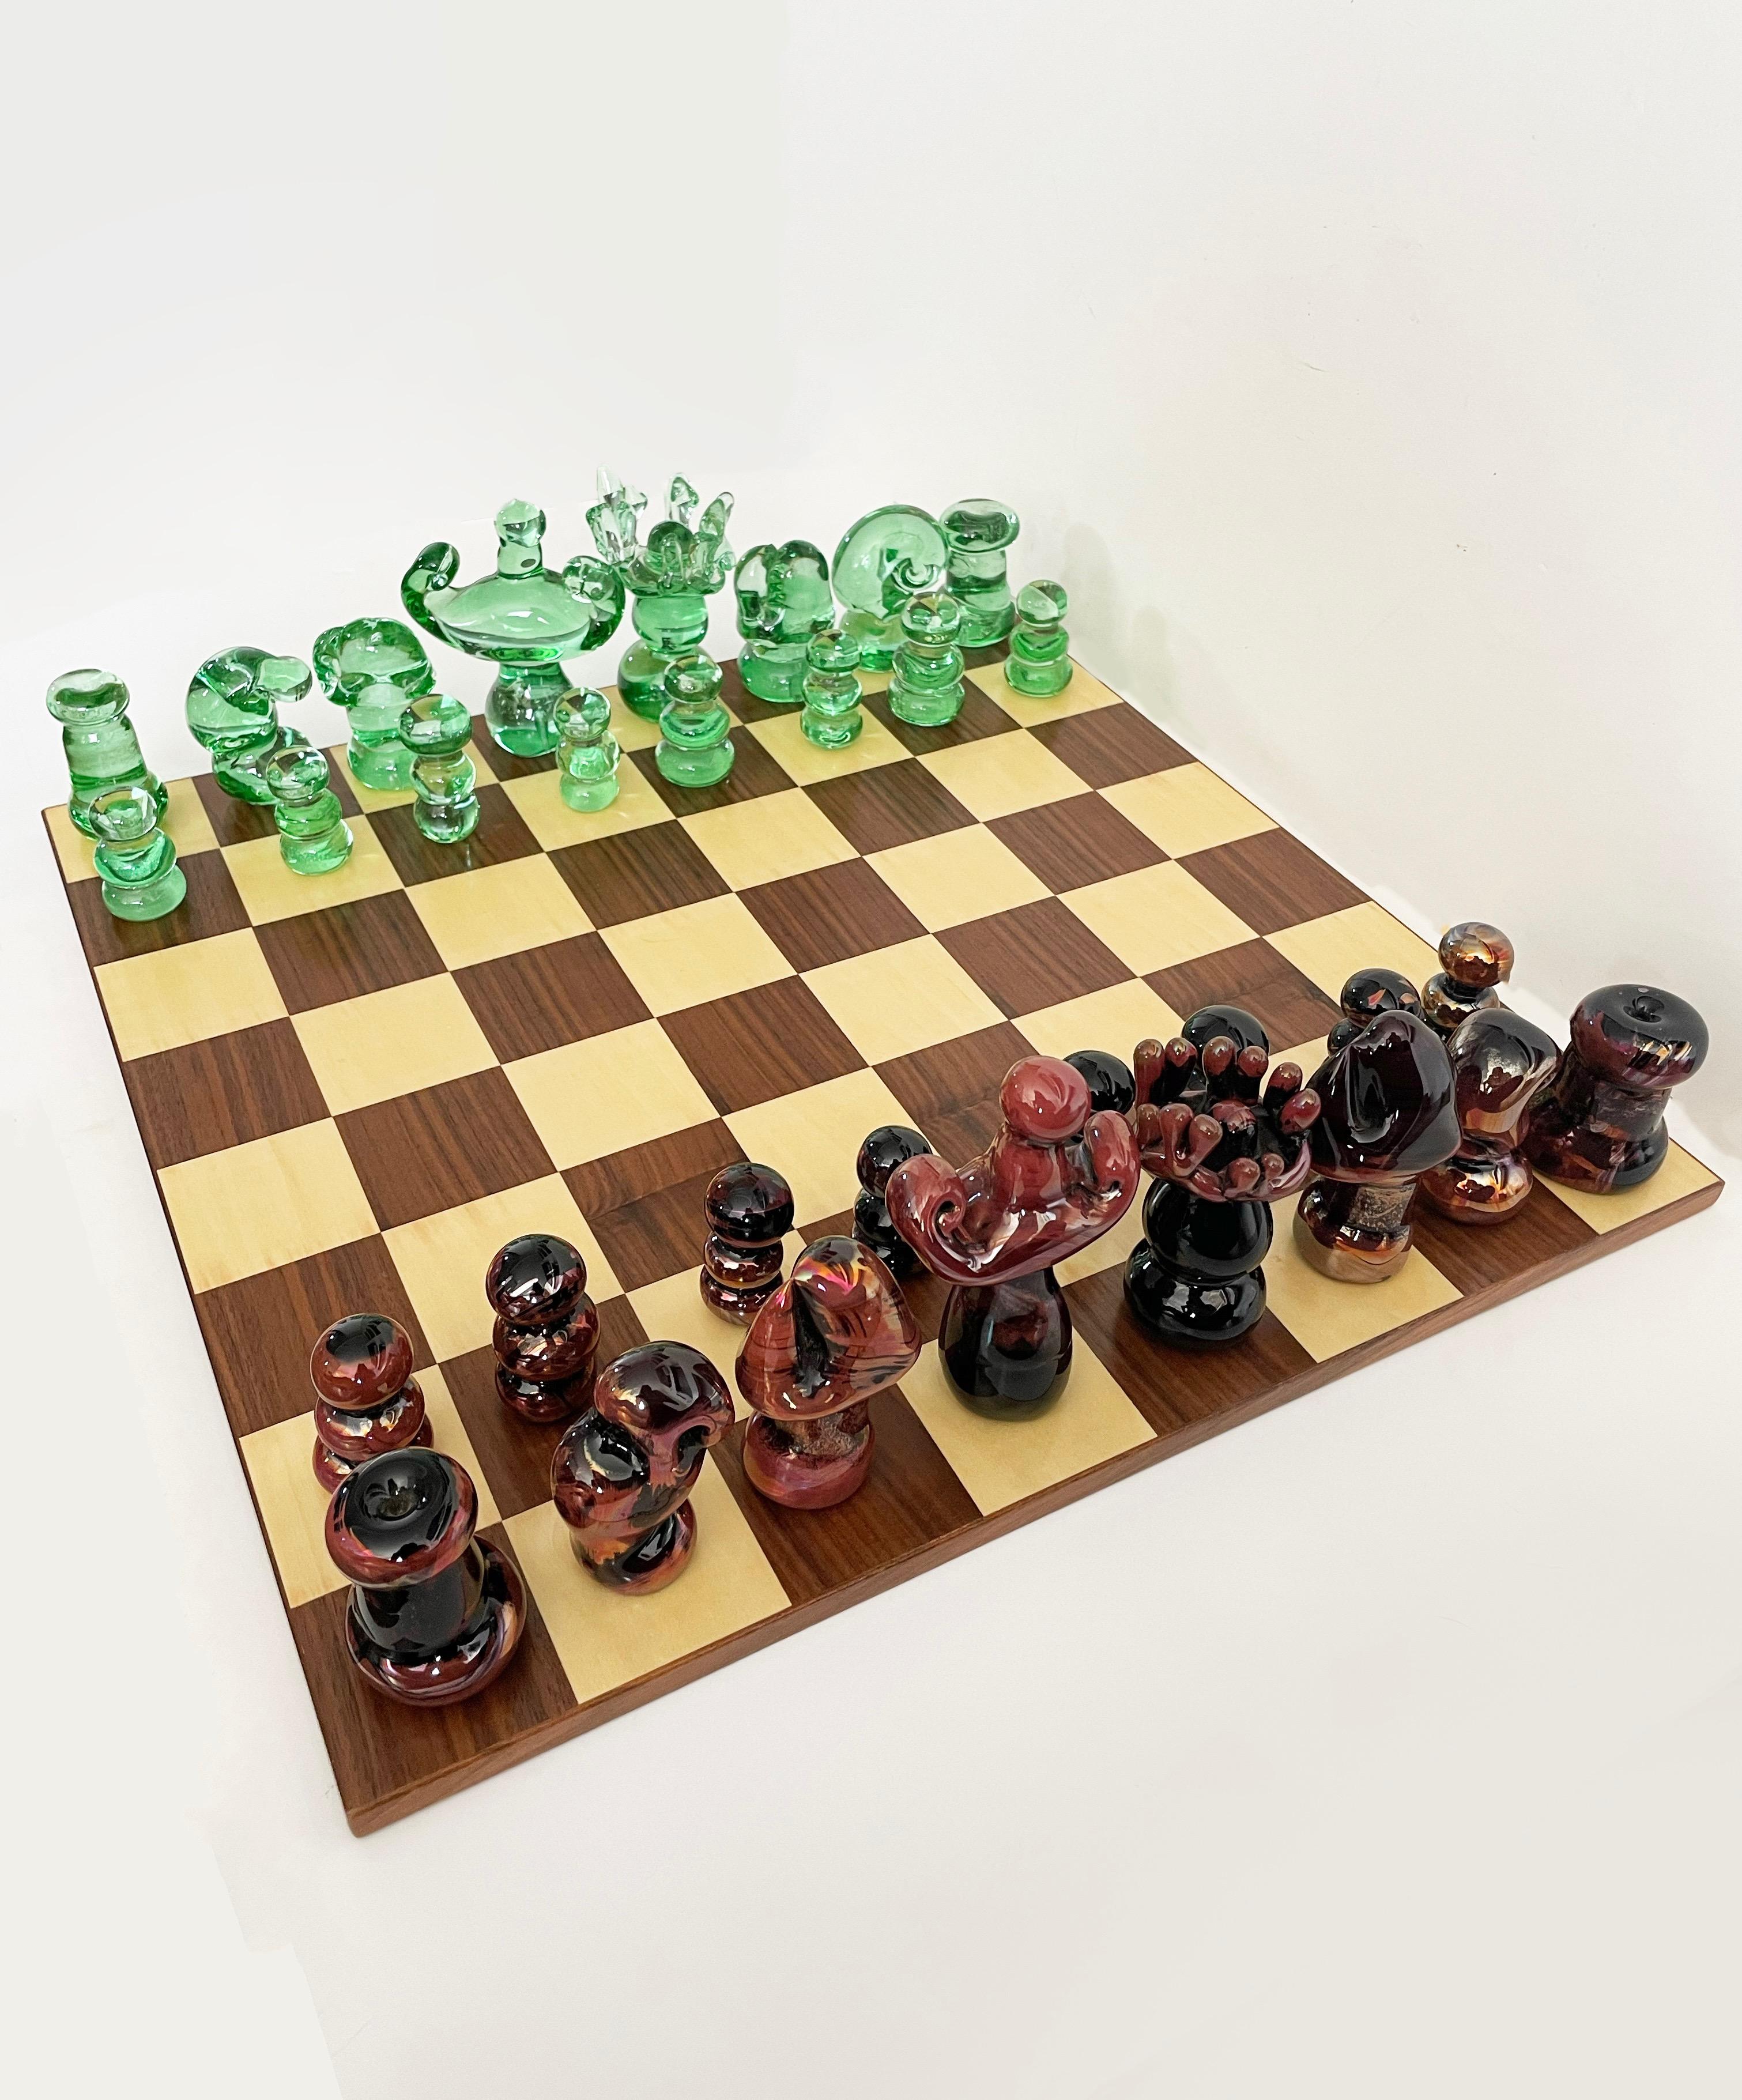 Superbe jeu d'échecs en verre de Murano composé de pièces juteuses soufflées à la main. Pas d'ébréchures ni de fissures, acheté auprès d'un collectionneur qui a acheté en Italie vers 1990. Planche en bois incluse.